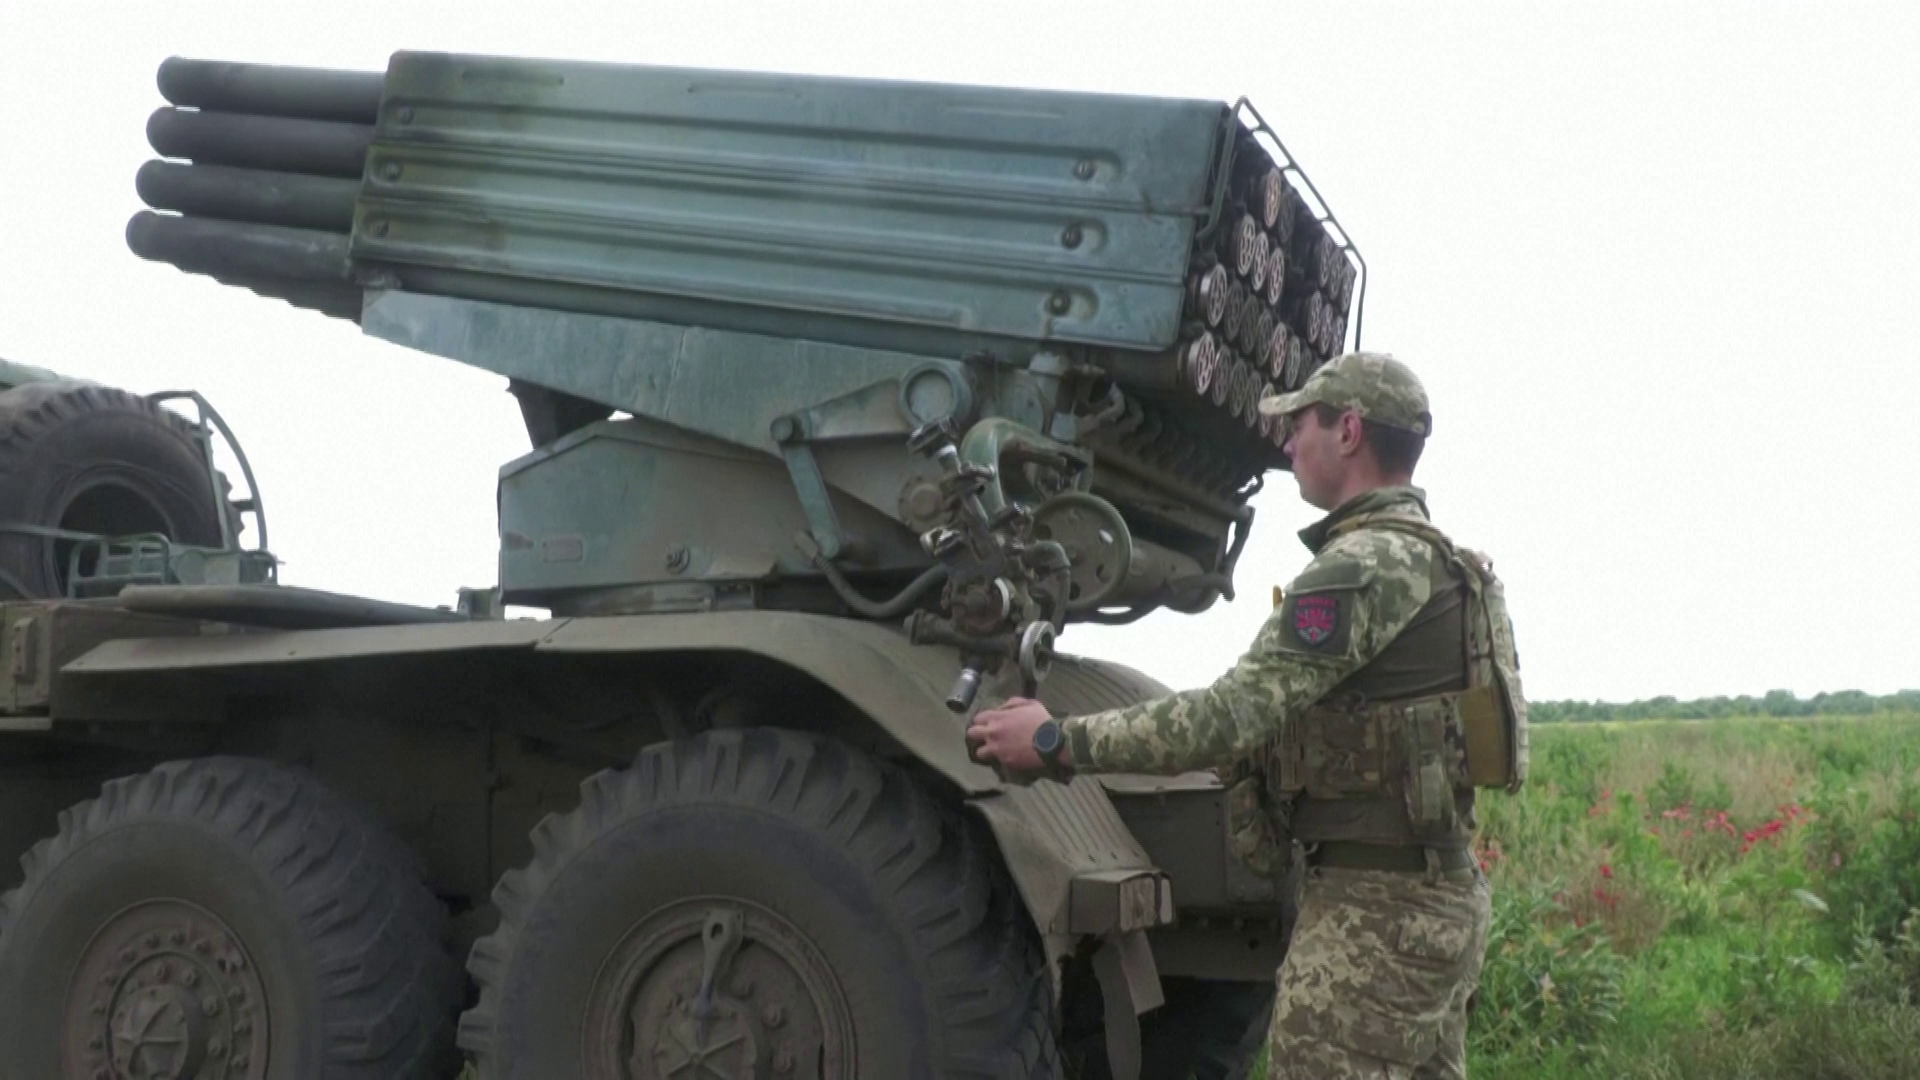 A britek szerint 2014-ben elcsatolt területet foglaltak vissza az ukránok az oroszoktól